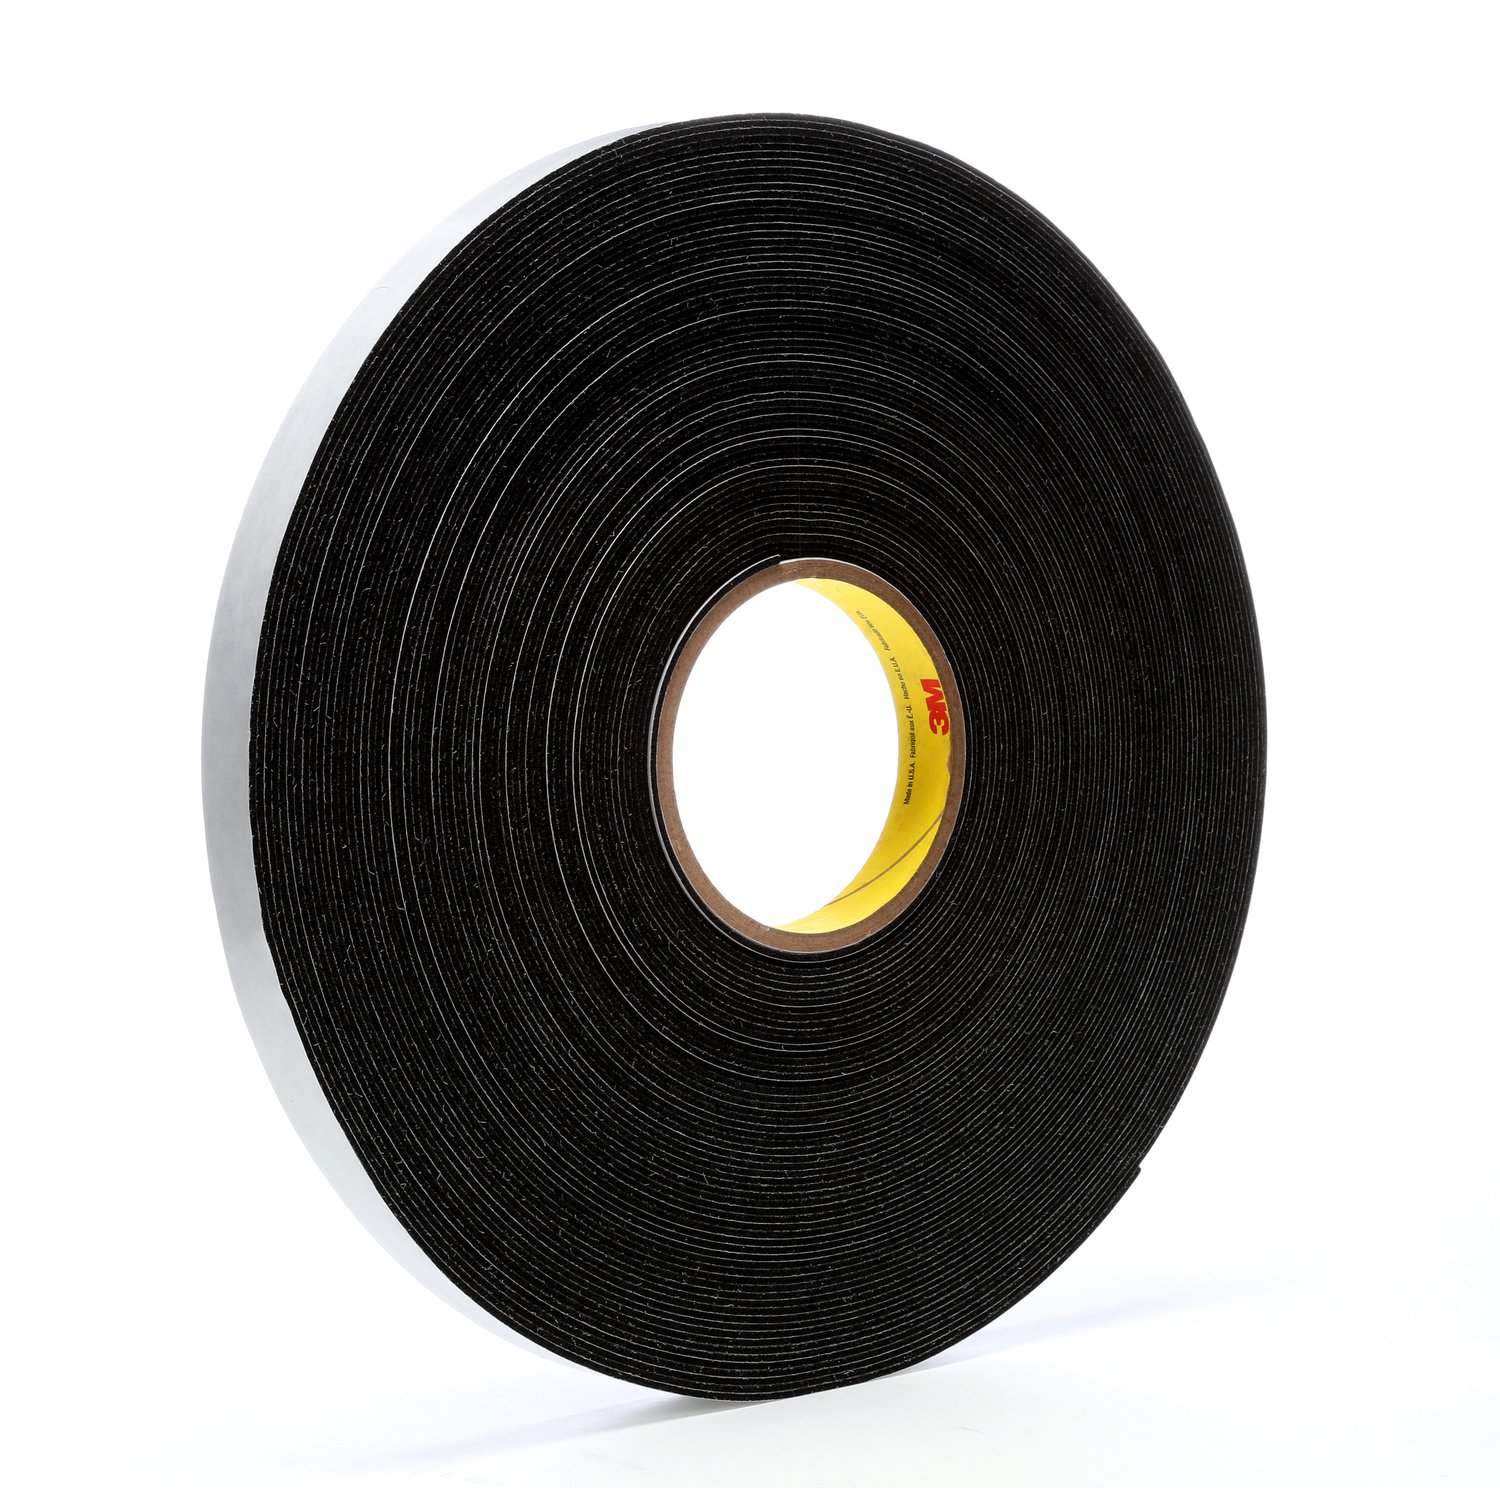 7000047492 - 3M Vinyl Foam Tape 4516, Black, 3/4 in x 36 yd, 62 mil, 12 rolls per
case